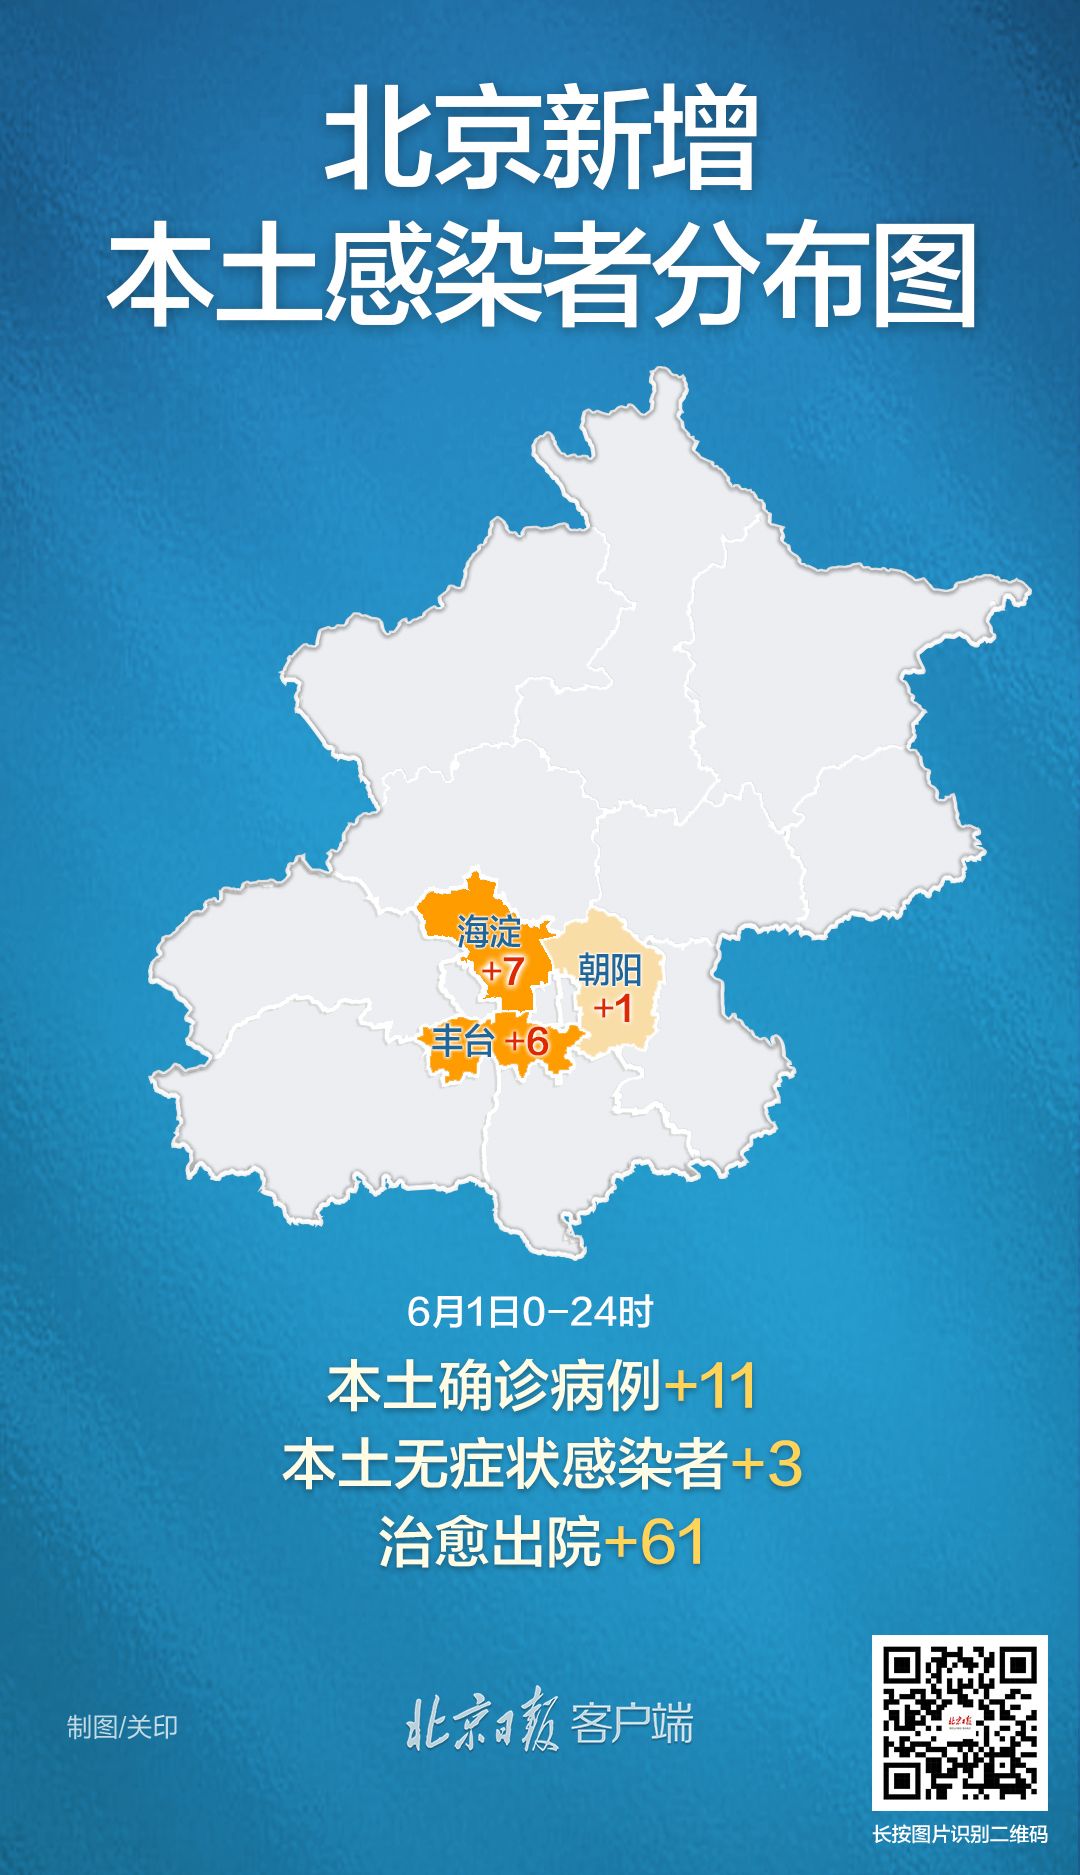 北京昨日新增本土113涉多区病例情况和分布来了